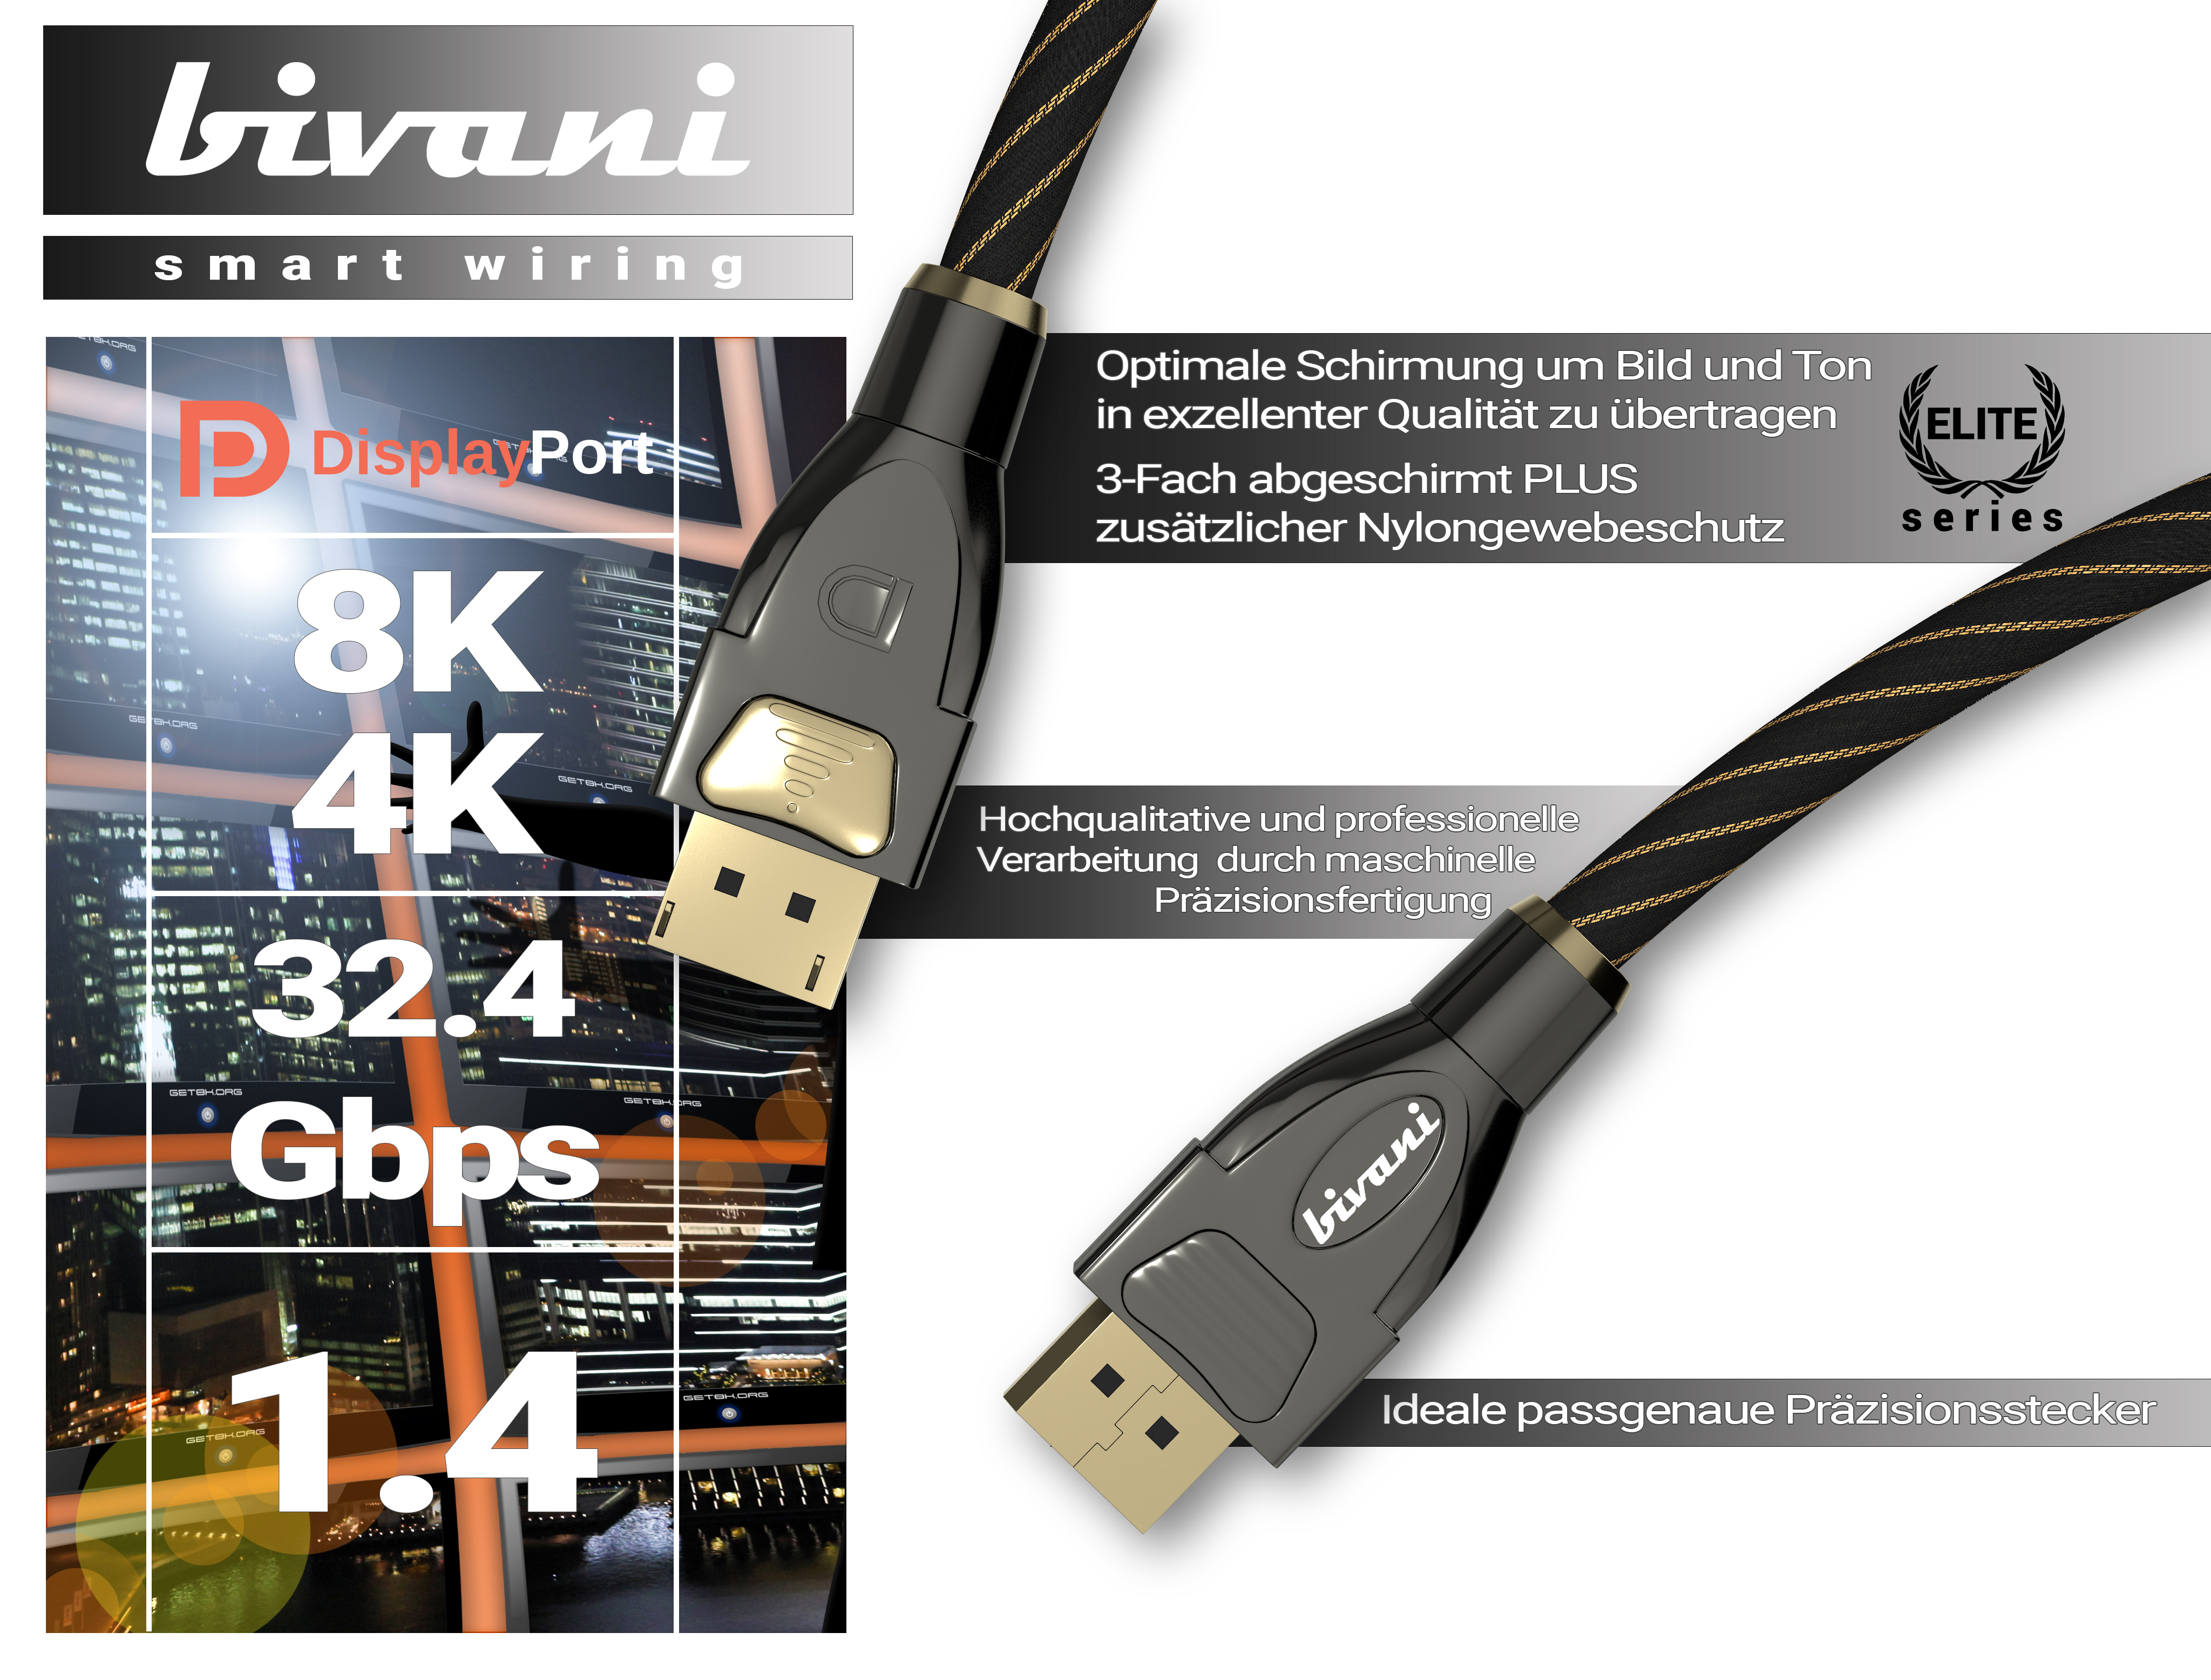 Premium Gbps Kabel, 1.4 Elite-Series, m - Kabel 8K 32,4 2 BIVANI DisplayPort